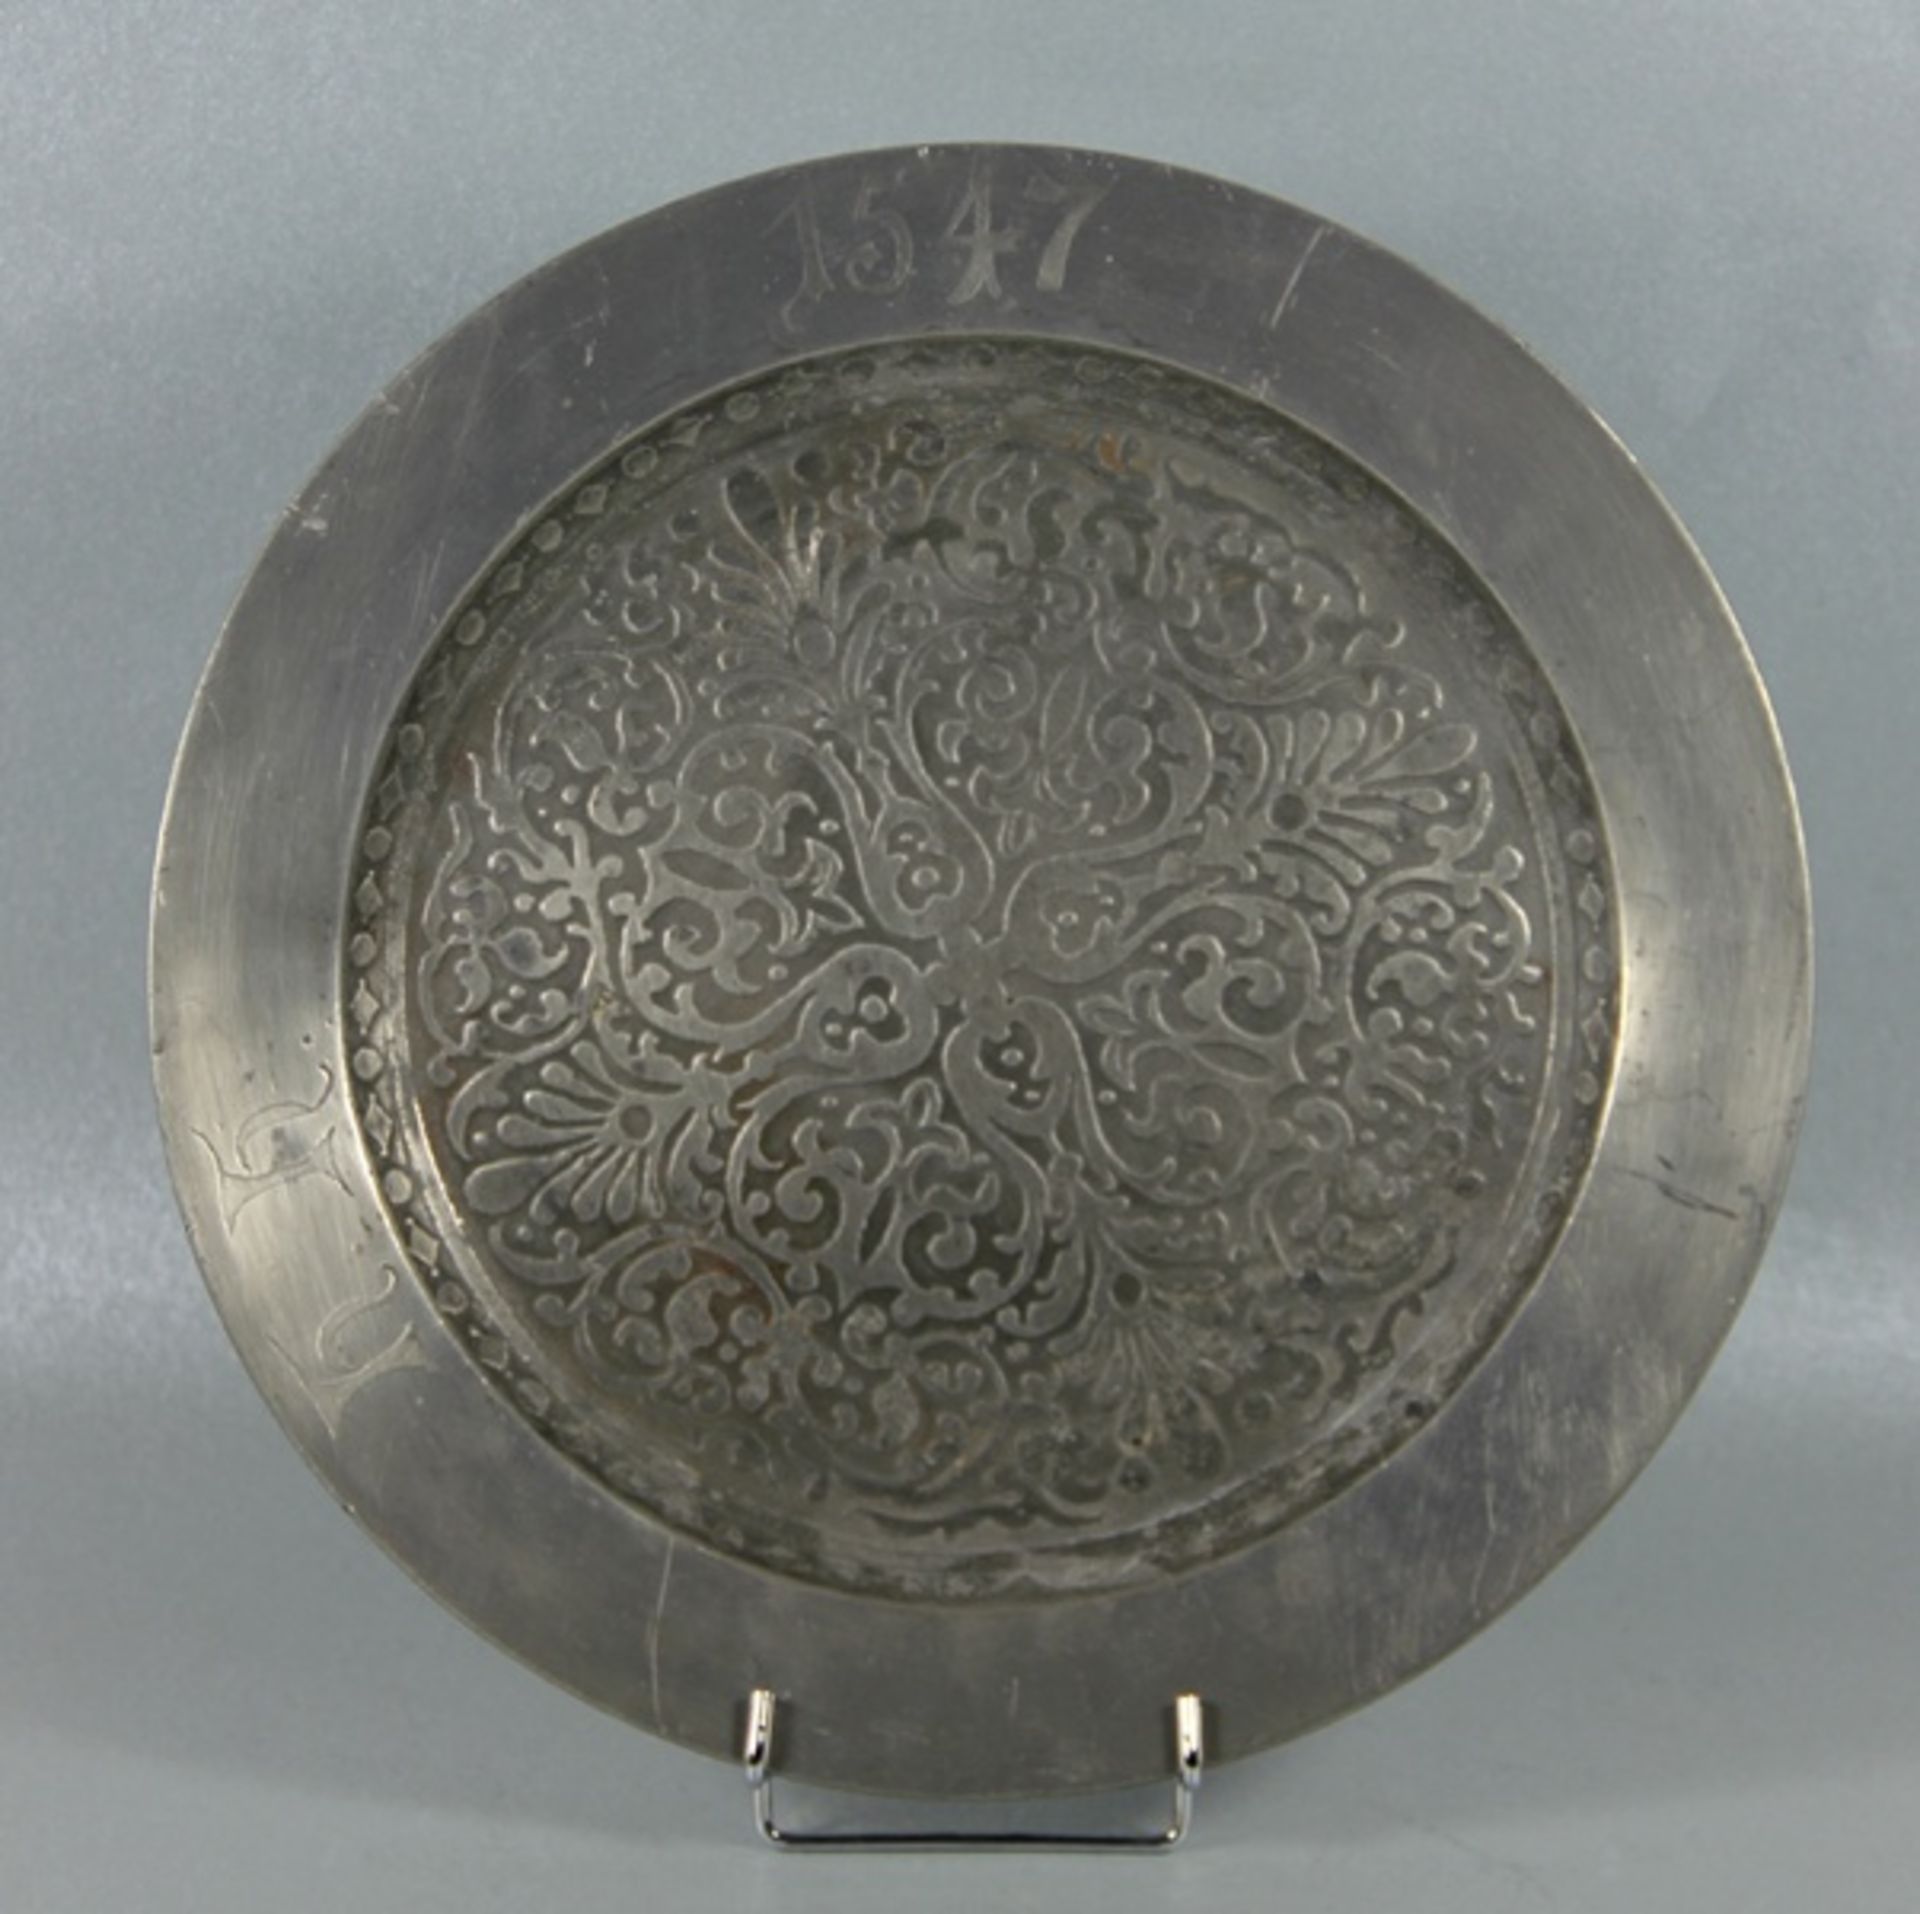 Zinnplattegroße runde Zinnplatte, der Rand graviert h.h. 1547, im Fond reiche Ornamentik, verso